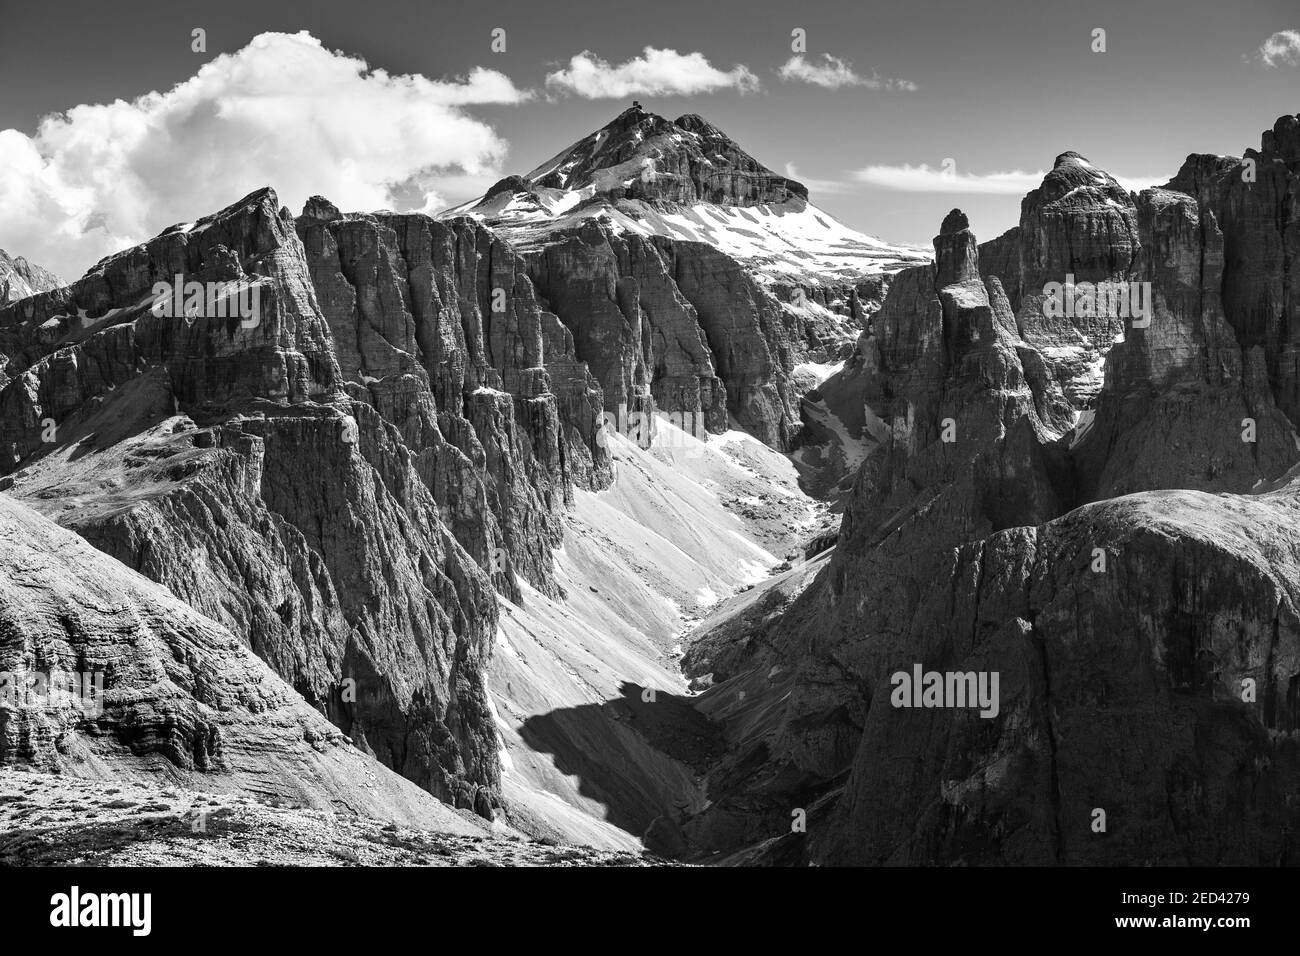 Blick auf die Sella-Gruppe, das Val Mezdì-Felstal und den Piz Boè-Gipfel. Die Grödner Dolomiten. Italienische Alpen. Europa. Schwarz-weiß. Stockfoto